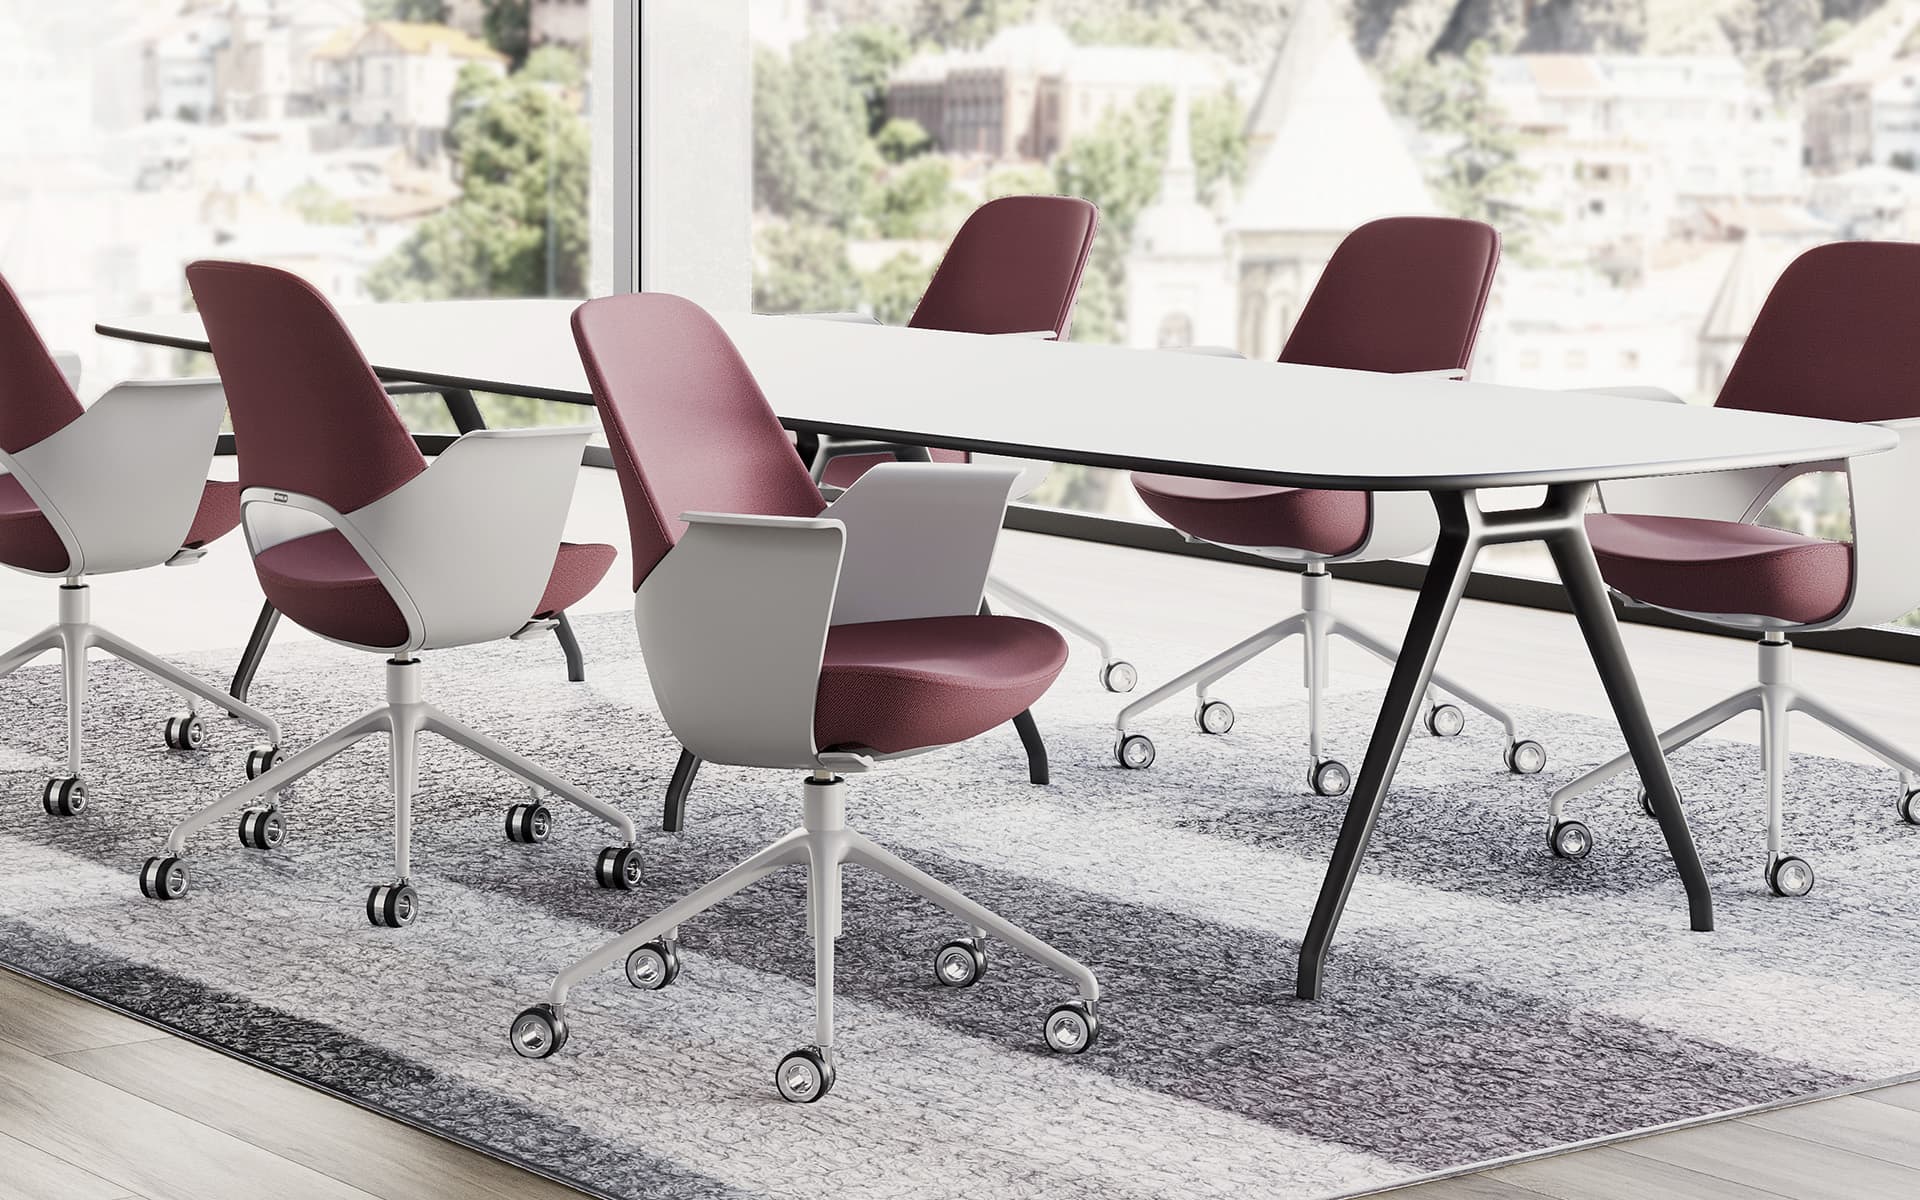 Sechs dunkelrote Henglin Caia Bürostühle von ITO Design rund um einen Konferenztisch